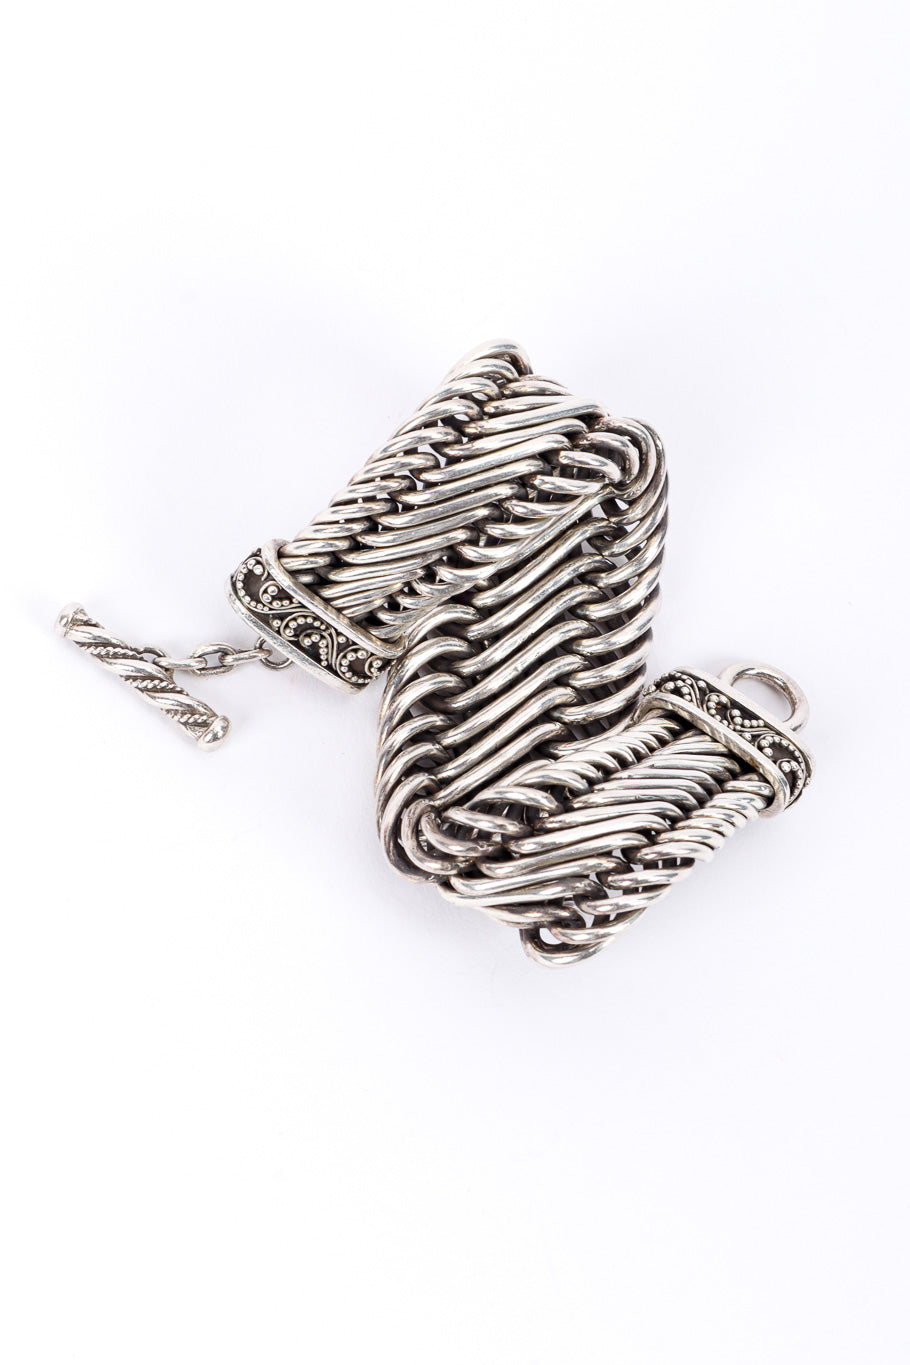 Vintage Woven Link Bracelet folded over @recessla